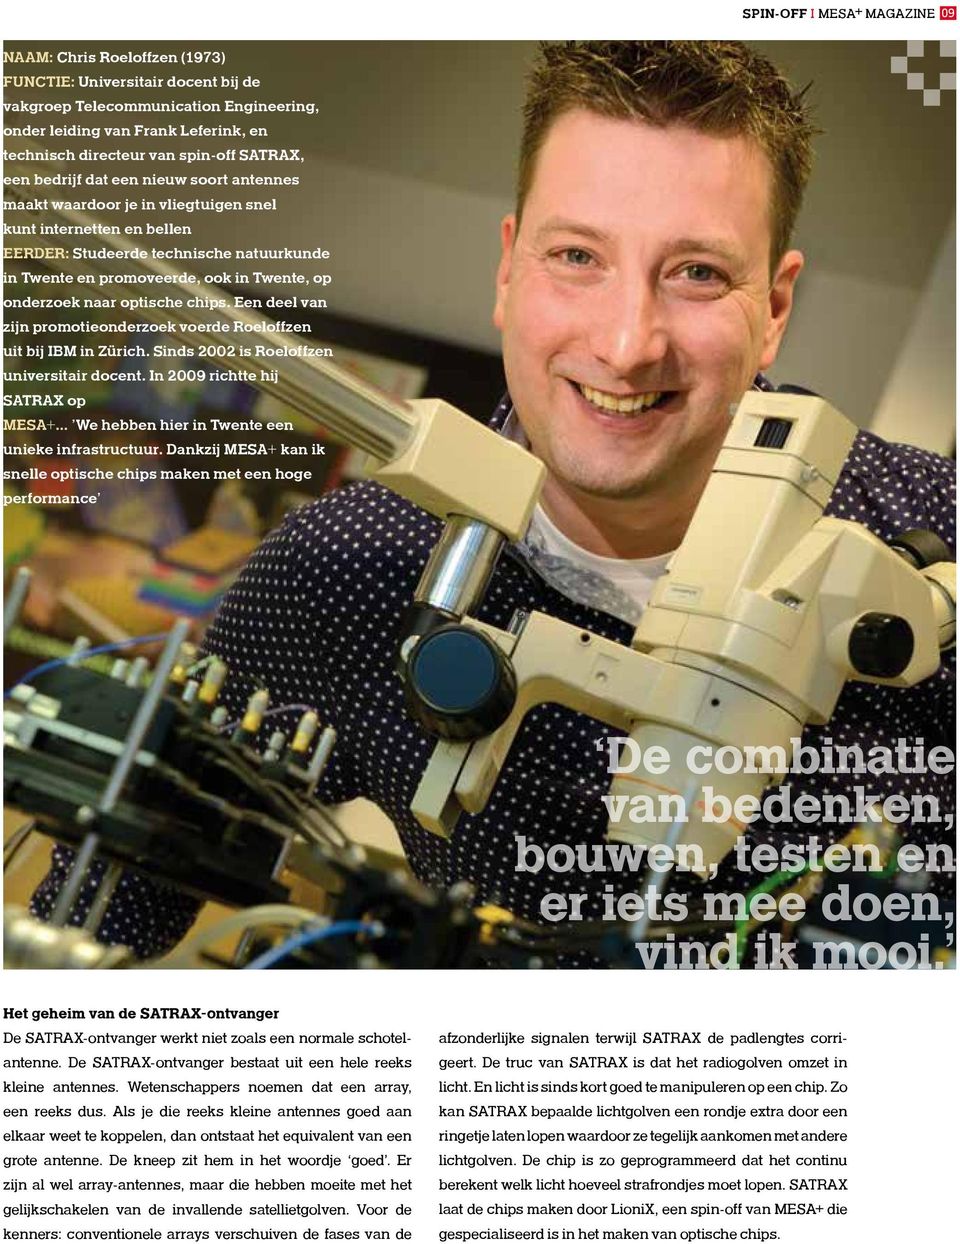 Twente, op onderzoek naar optische chips. Een deel van zijn promotieonderzoek voerde Roeloffzen uit bij IBM in Zürich. Sinds 2002 is Roeloffzen universitair docent.